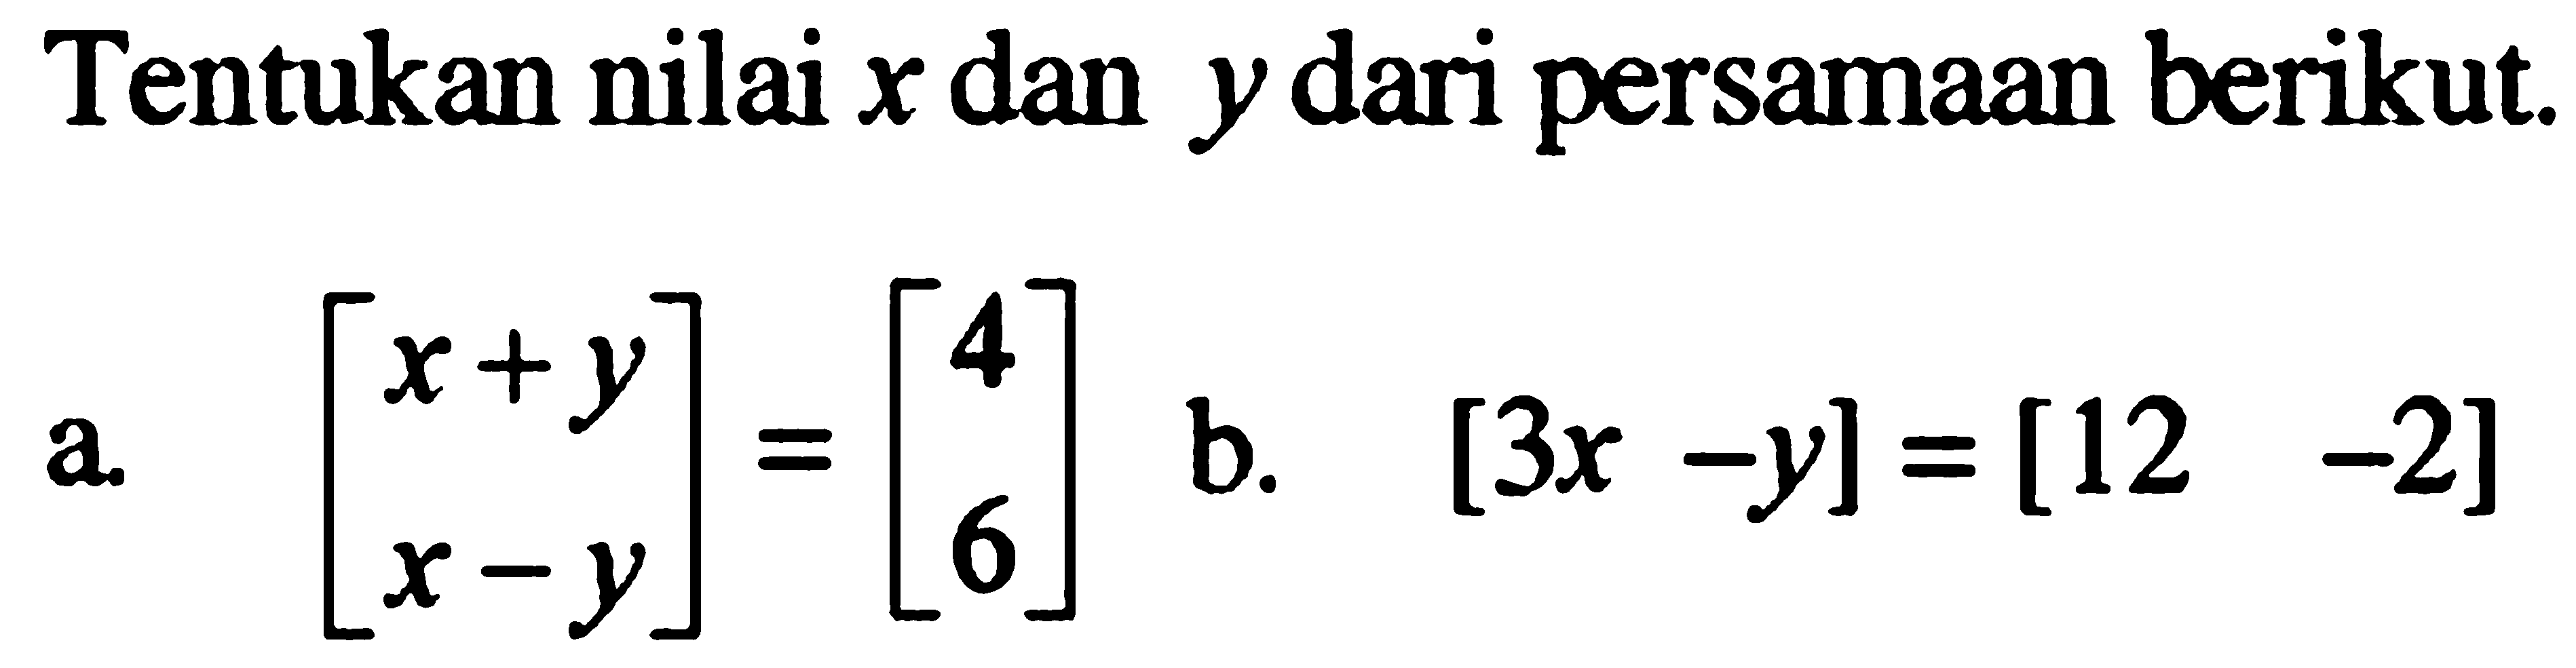 Tentukan nilai x dan y dari persamaan berikut. a. [x+y x-y]=[4 6] b. [3x-y][12 -2]